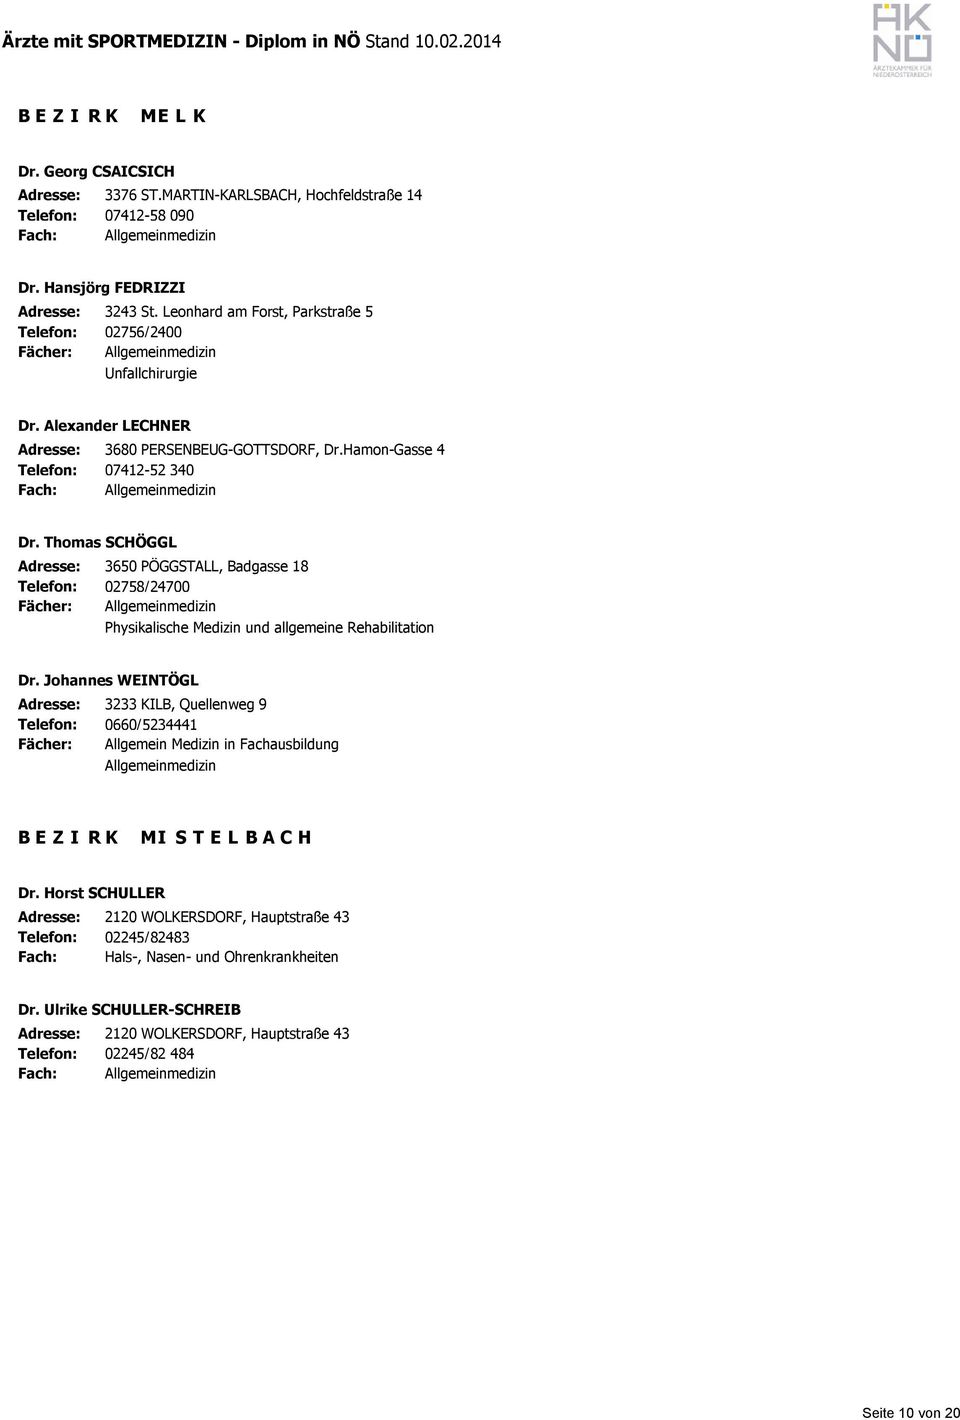 Thomas SCHÖGGL Adresse: 3650 PÖGGSTALL, Badgasse 18 02758/24700 Physikalische Medizin und allgemeine Rehabilitation Dr.